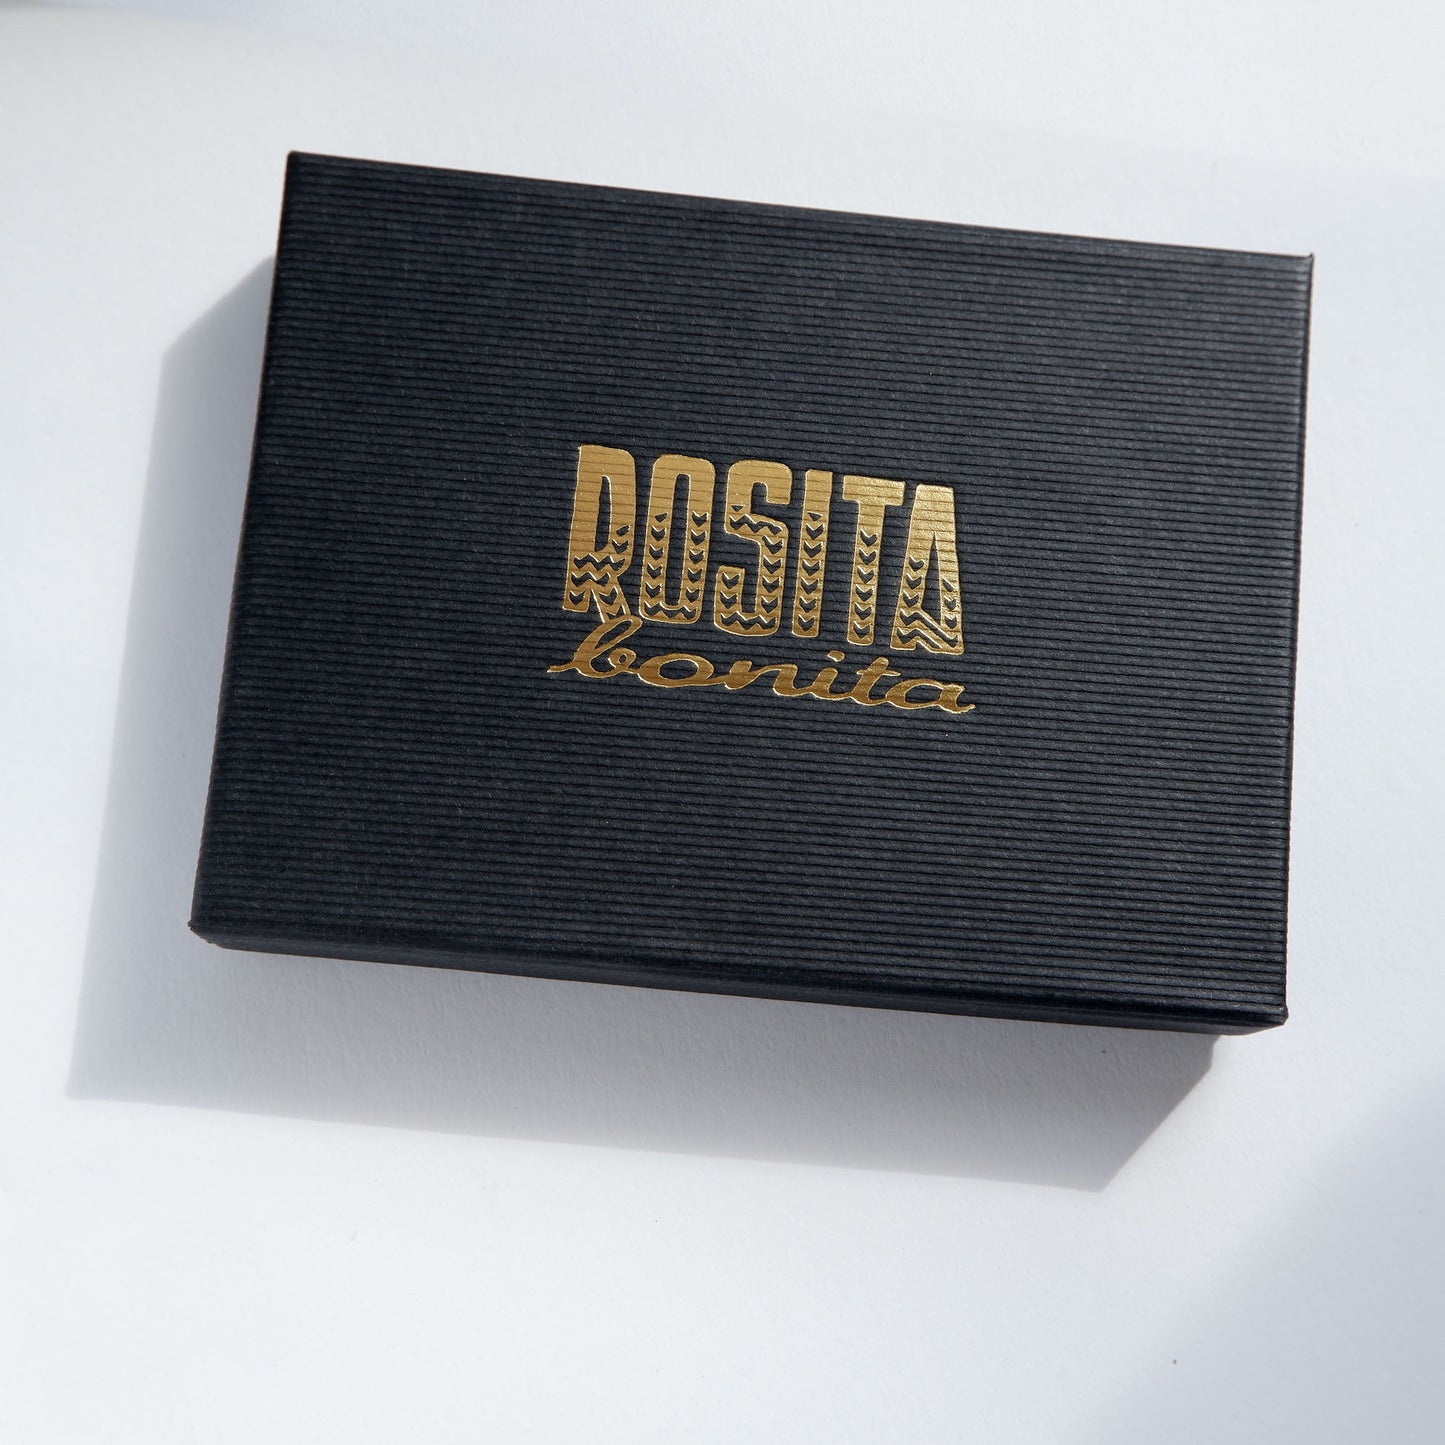 black ribbed cardboard box with Rosita Bonita logo in gold 